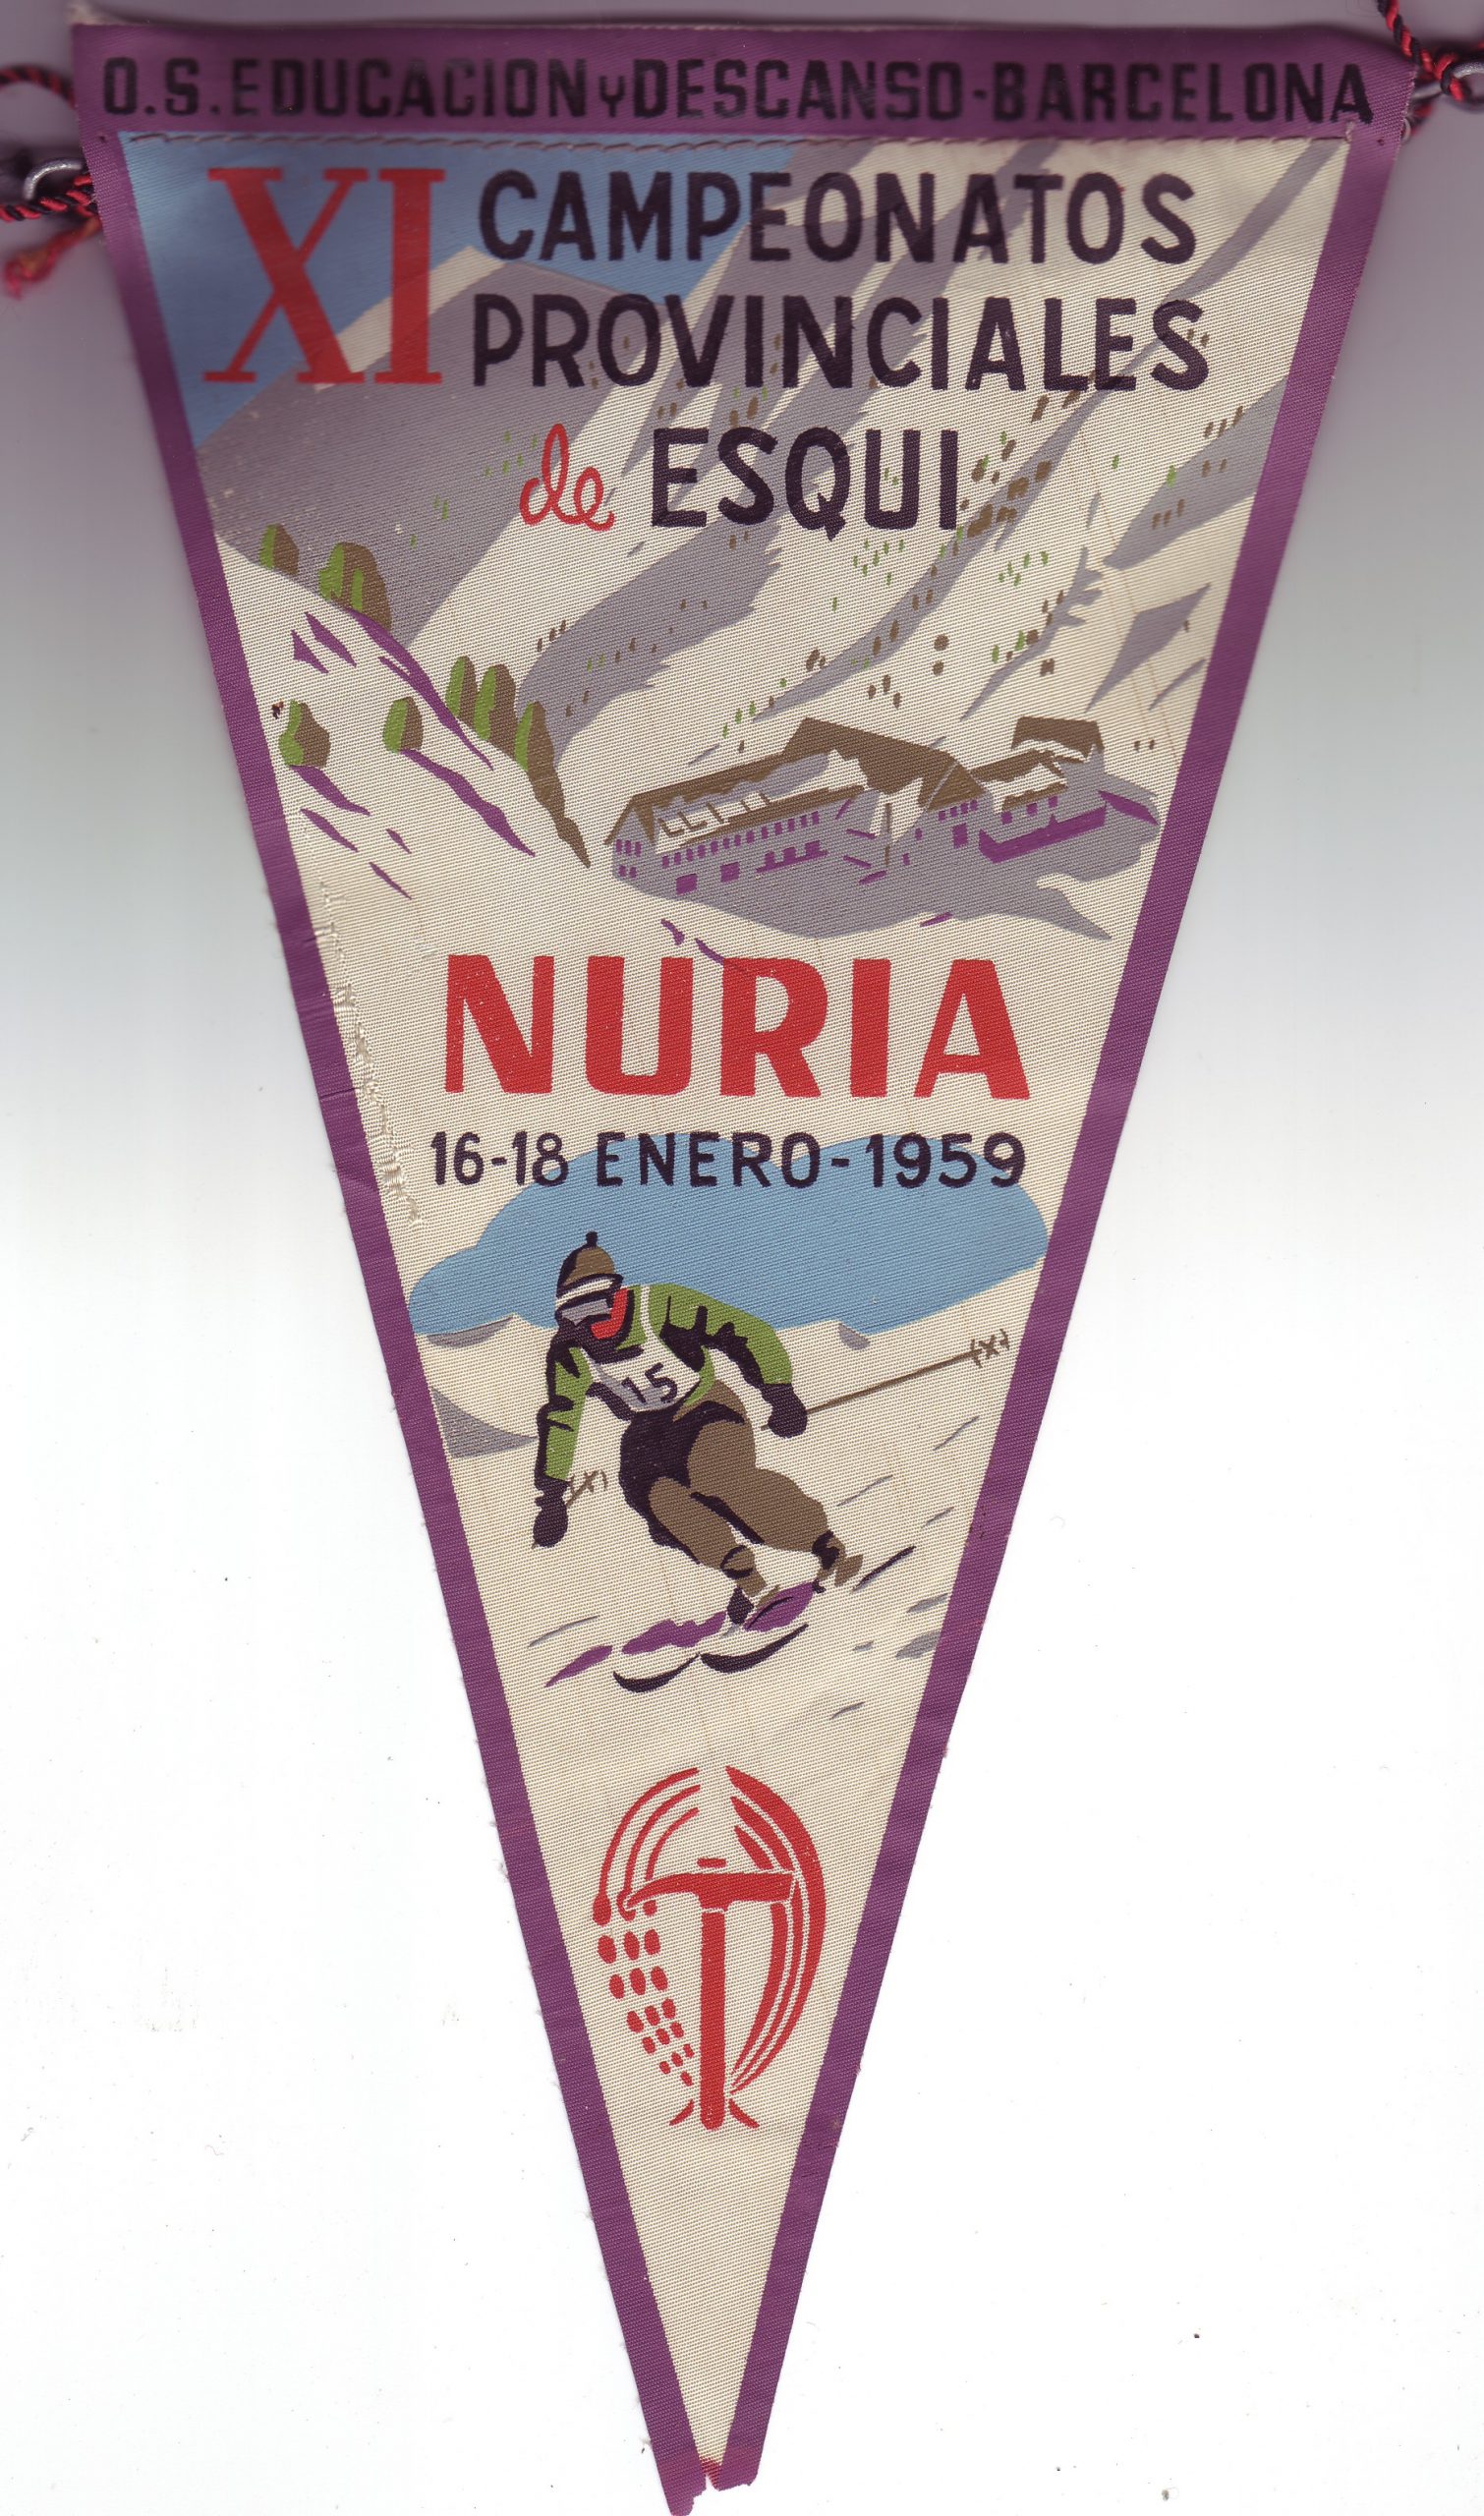 «O.S. Educación y Descanso – Barcelona – XI Campeonatos provinciales de esquí – Nuria – 16-18 enero 1959»